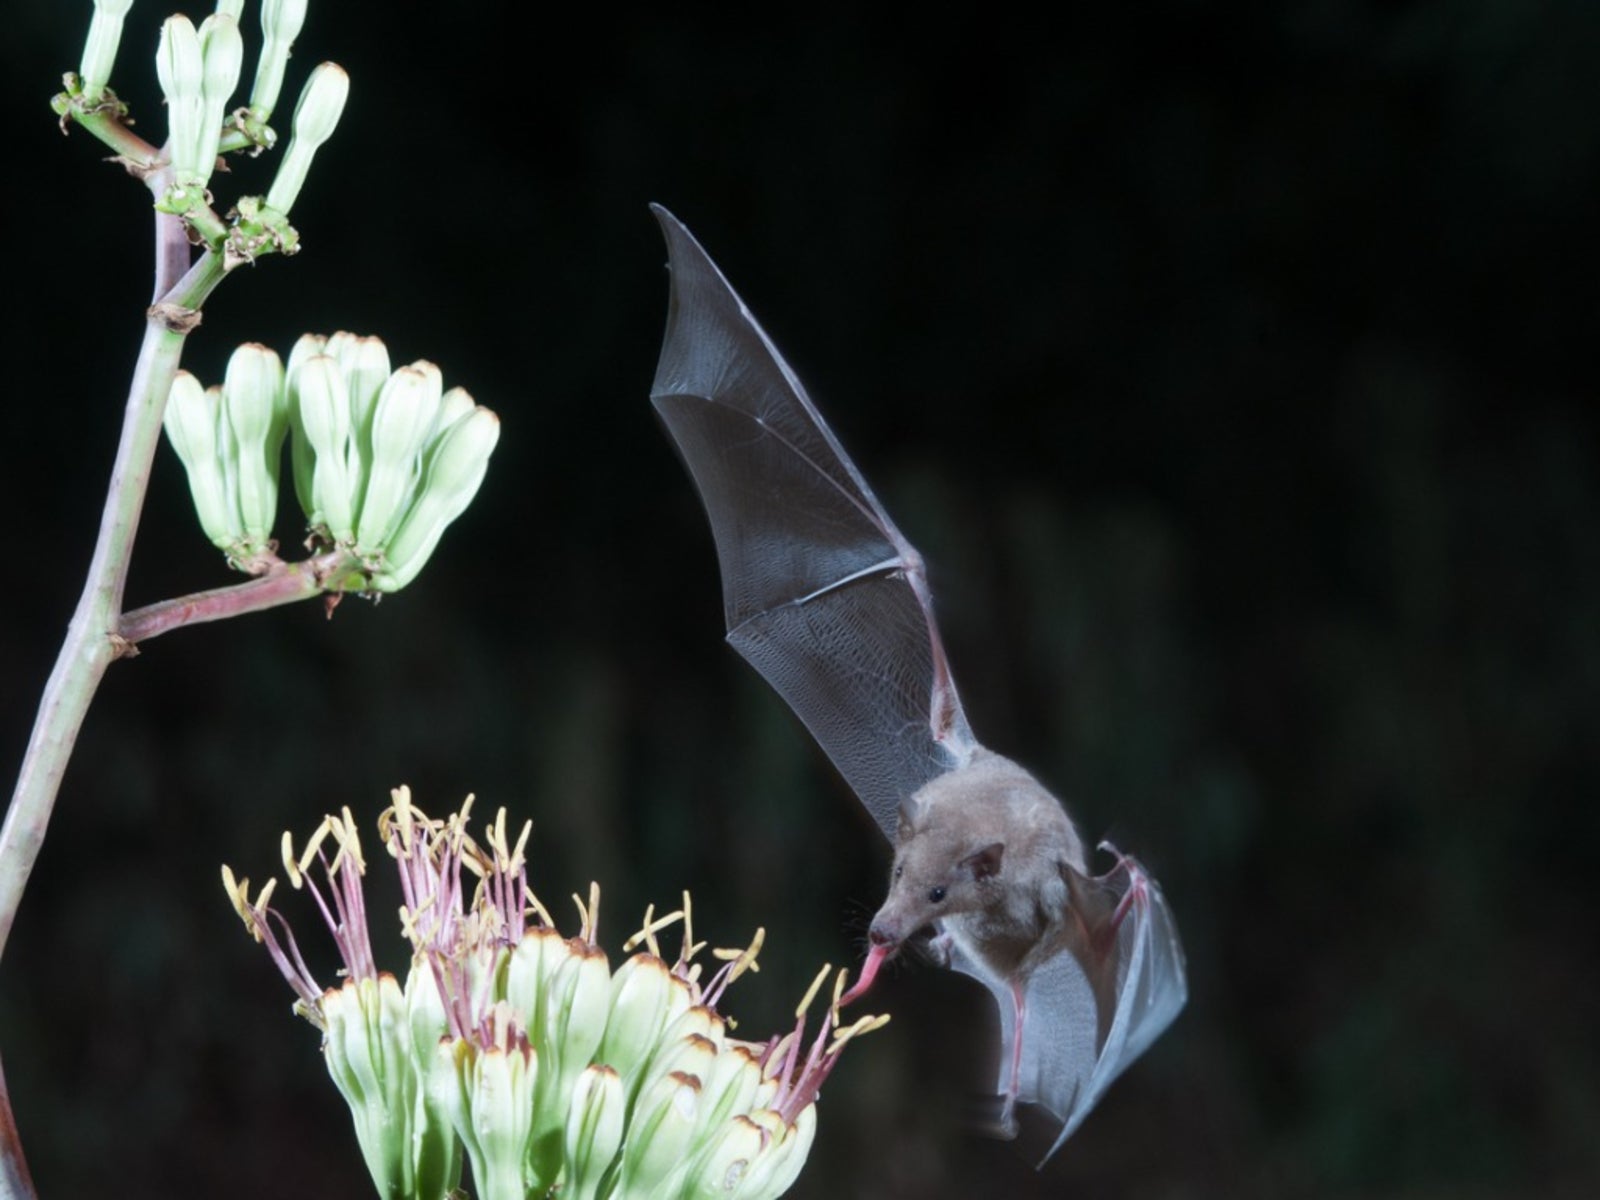 bat feeding on nector